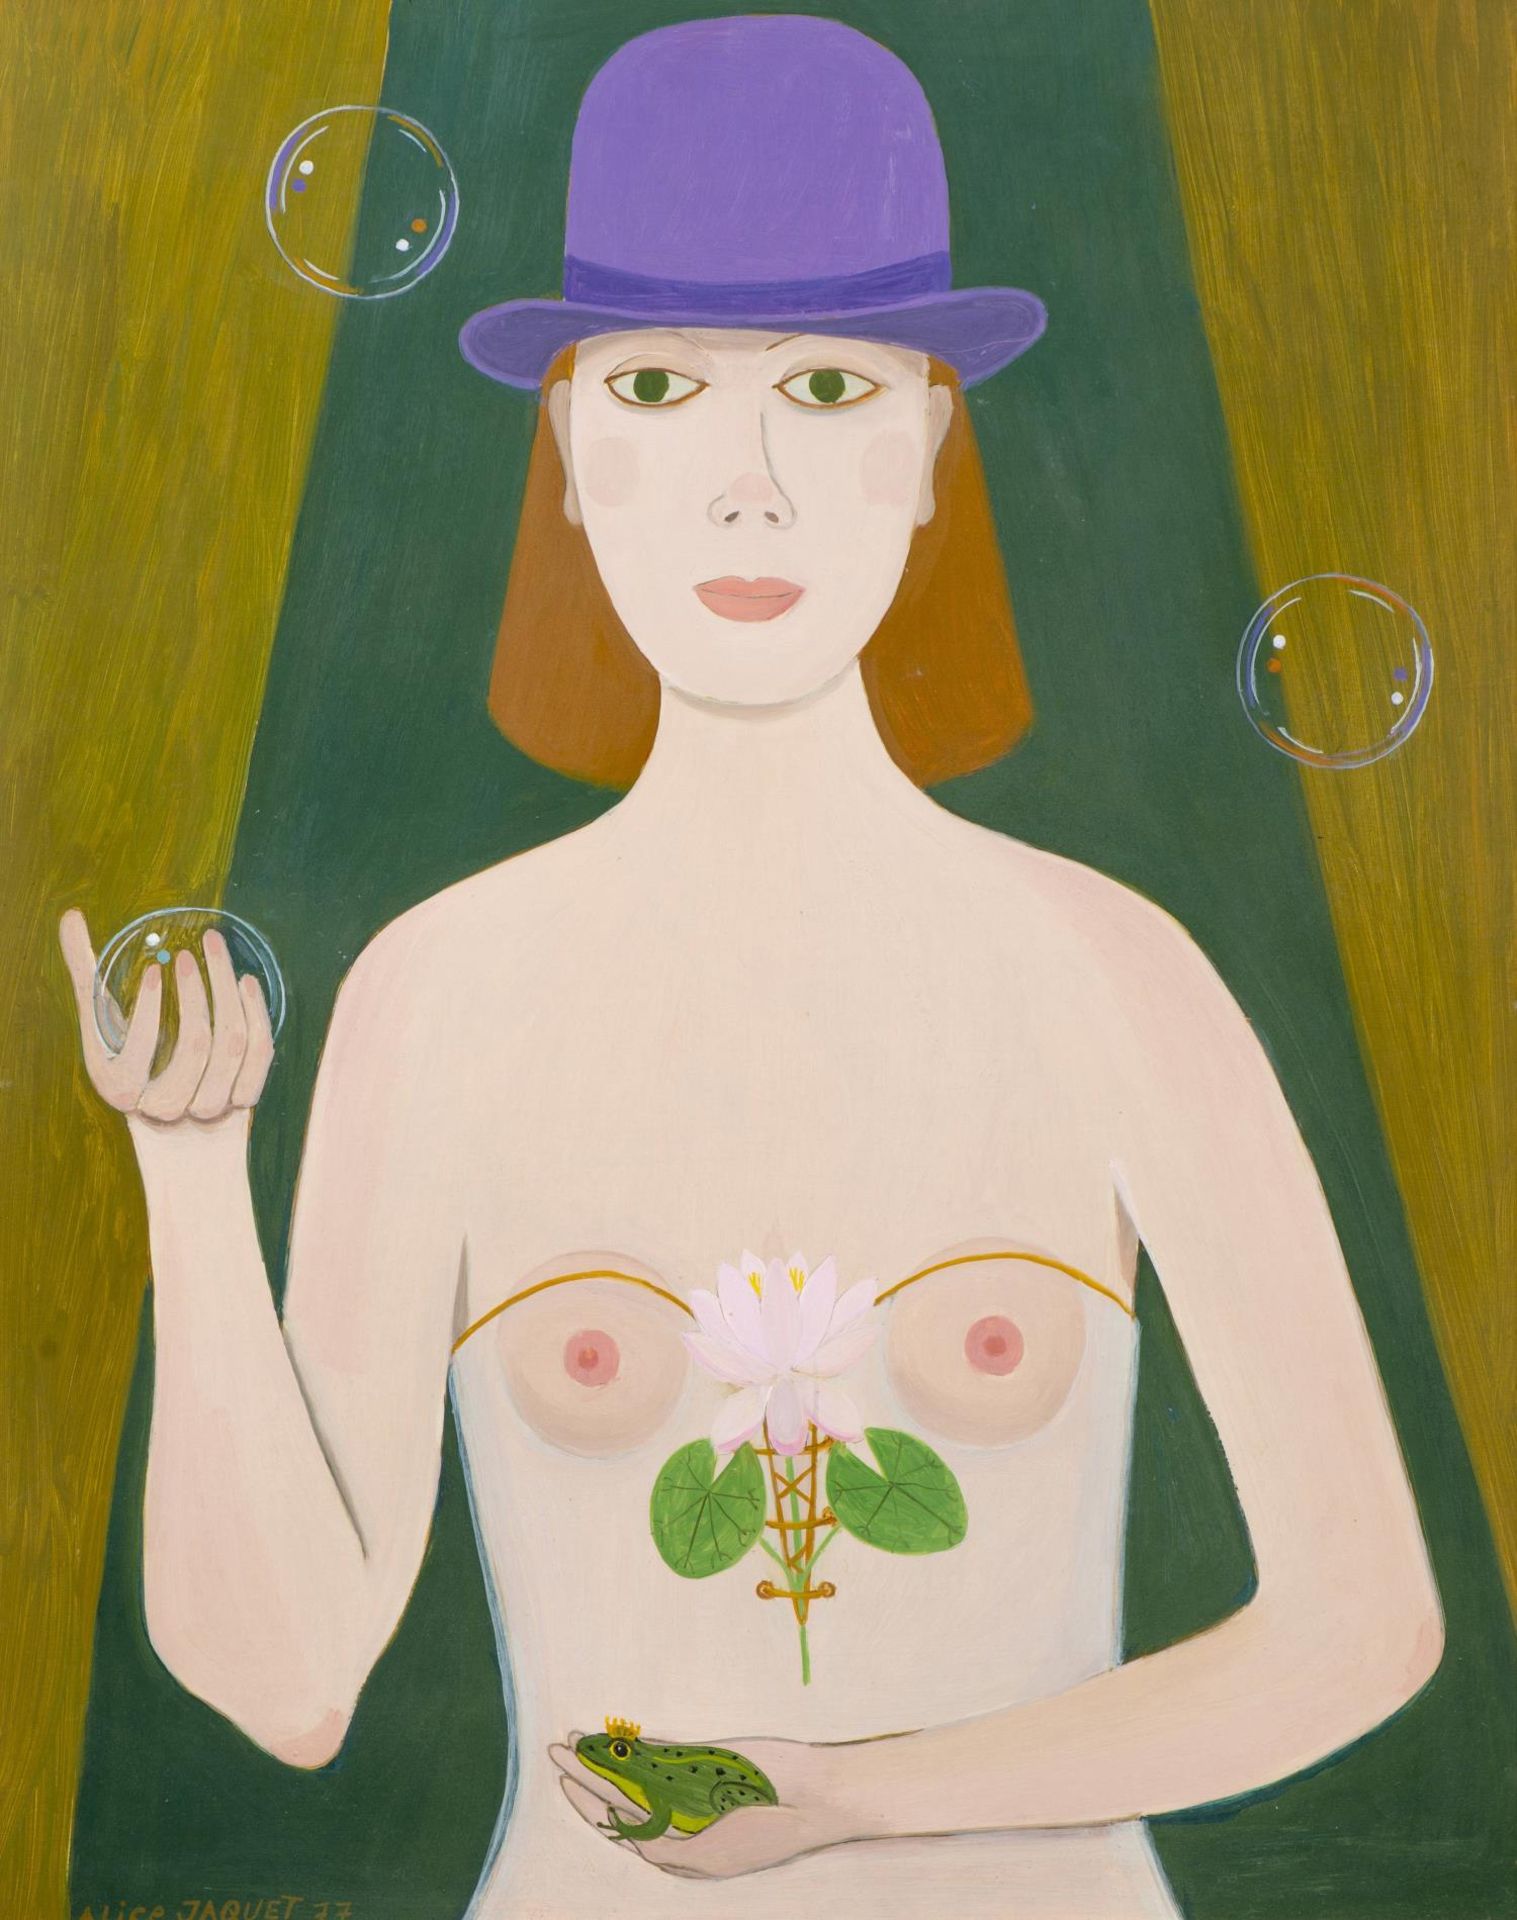 Alice Jaquet (1906-1990), "La princesse et la grenouille"